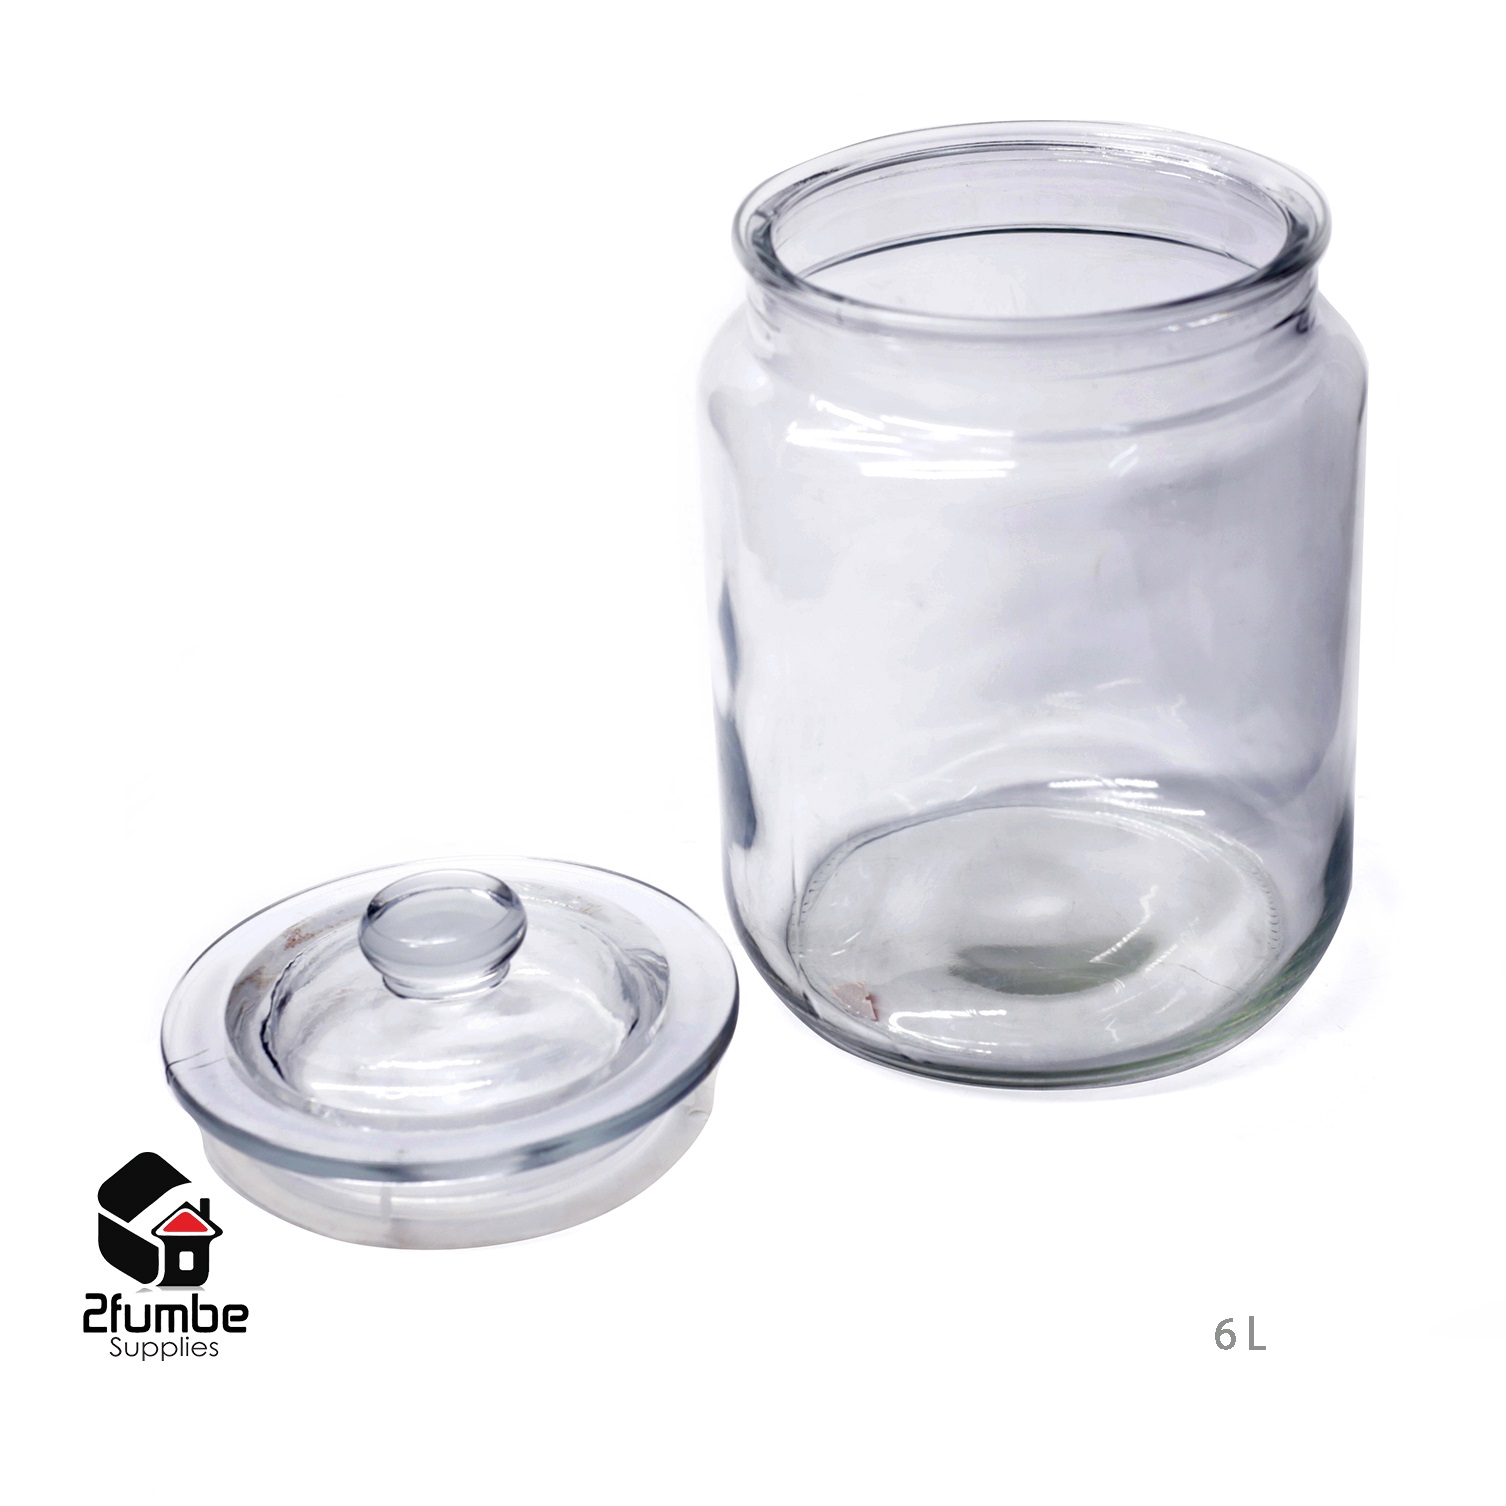 SPC07 -Cookie jar 6Liters Glas can -2fumbe